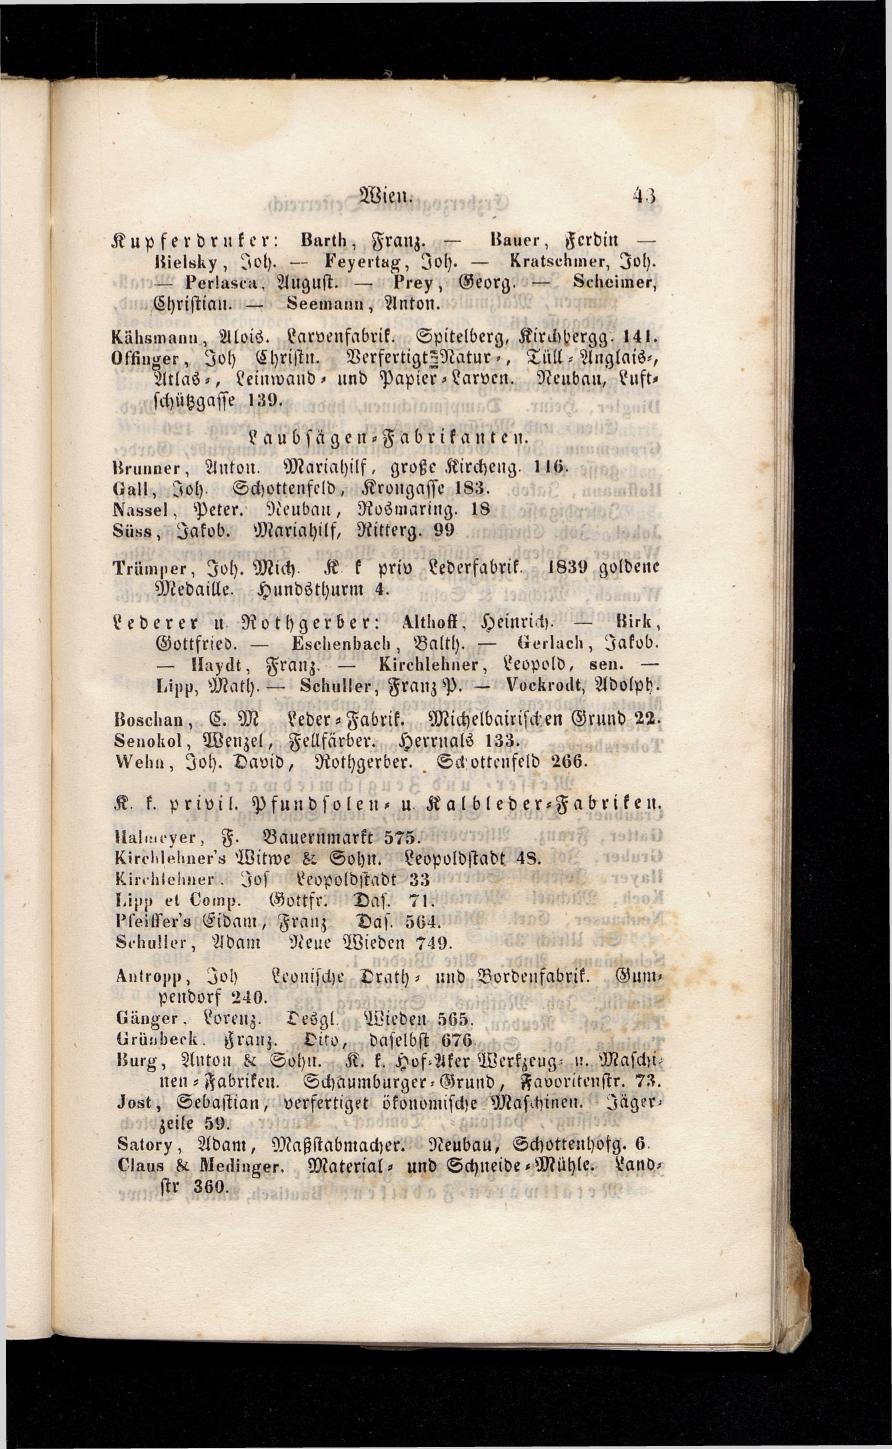 Grosses Adressbuch der Kaufleute. No. 13. Oesterreich ober u. unter der Enns 1844 - Seite 47